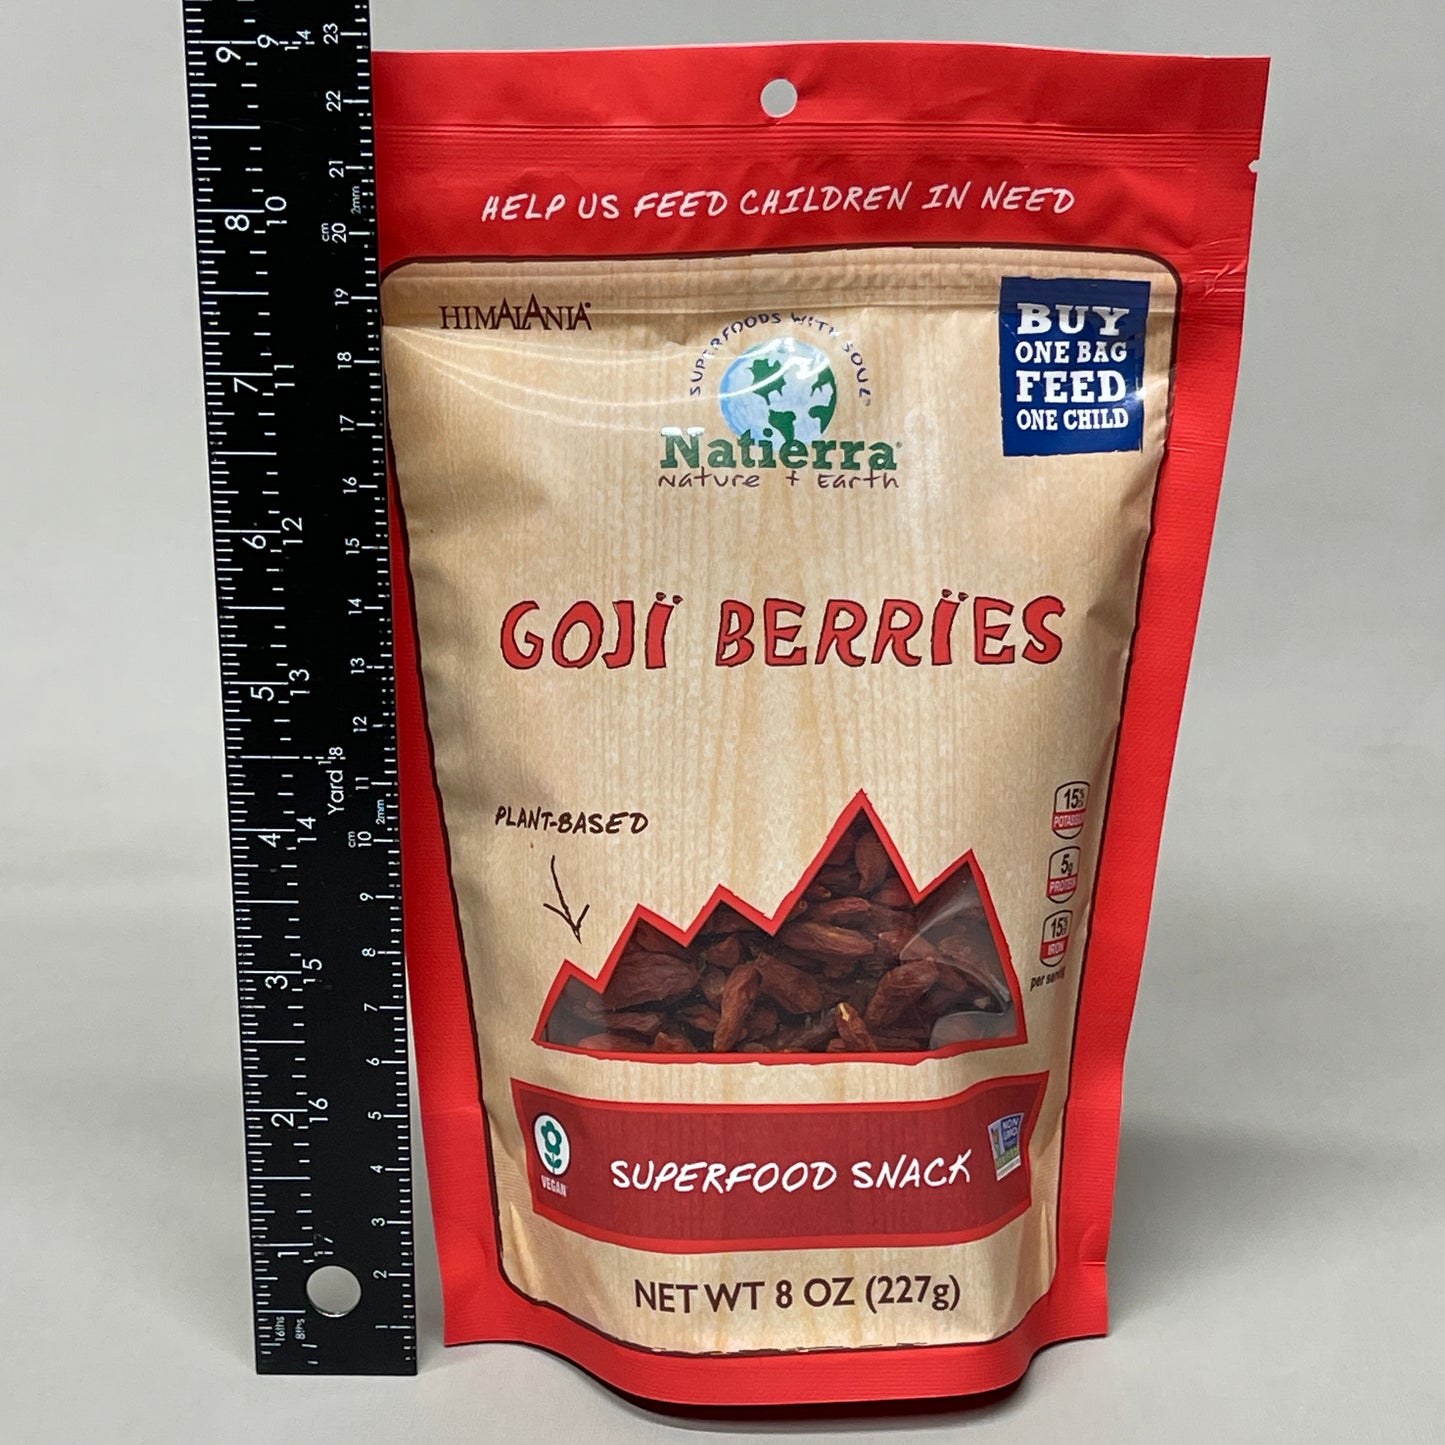 NATIERRA Nature & Earth Goji Berries Super Food Snack 8 oz (New)